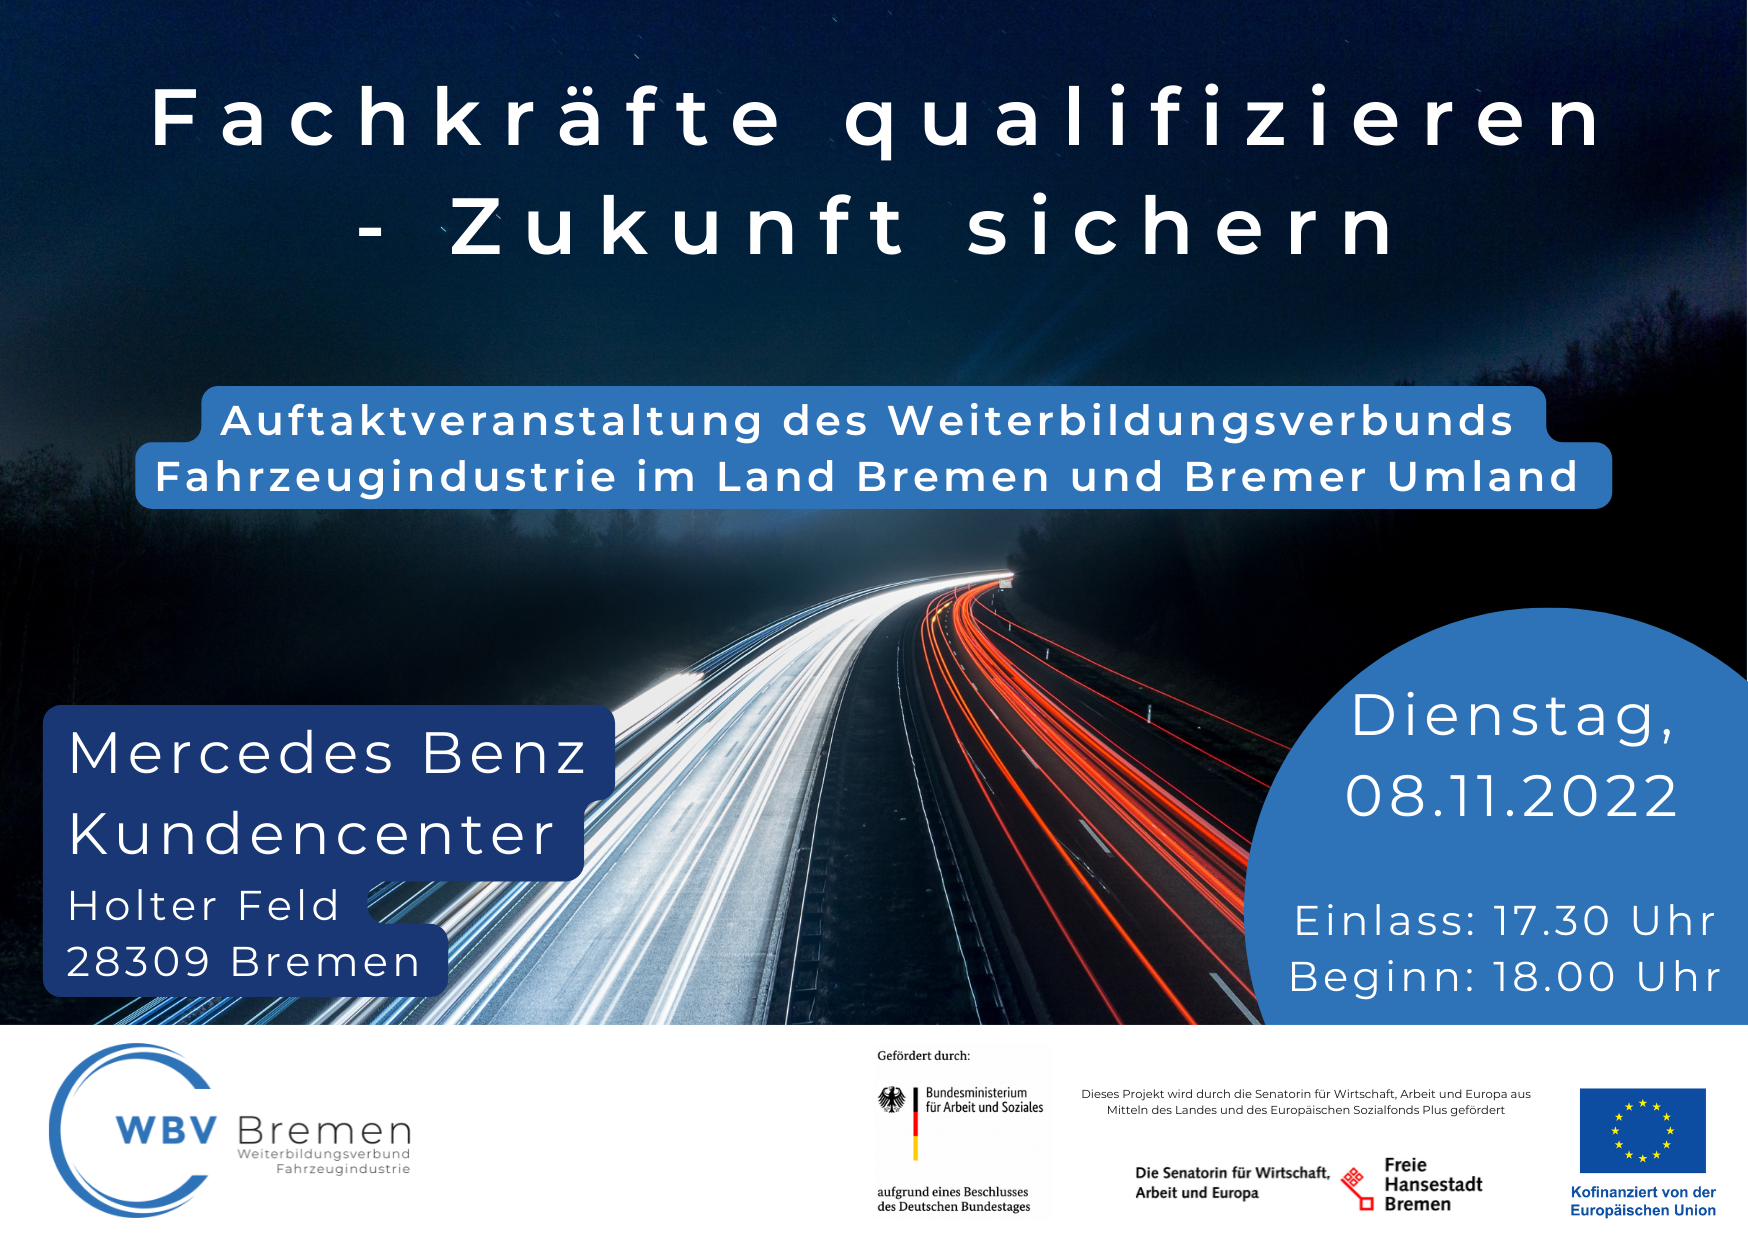 Auftaktveranstaltung des Weiterbildungsverbunds Fahrzeugindustrie im Land Bremen und Bremer Umland